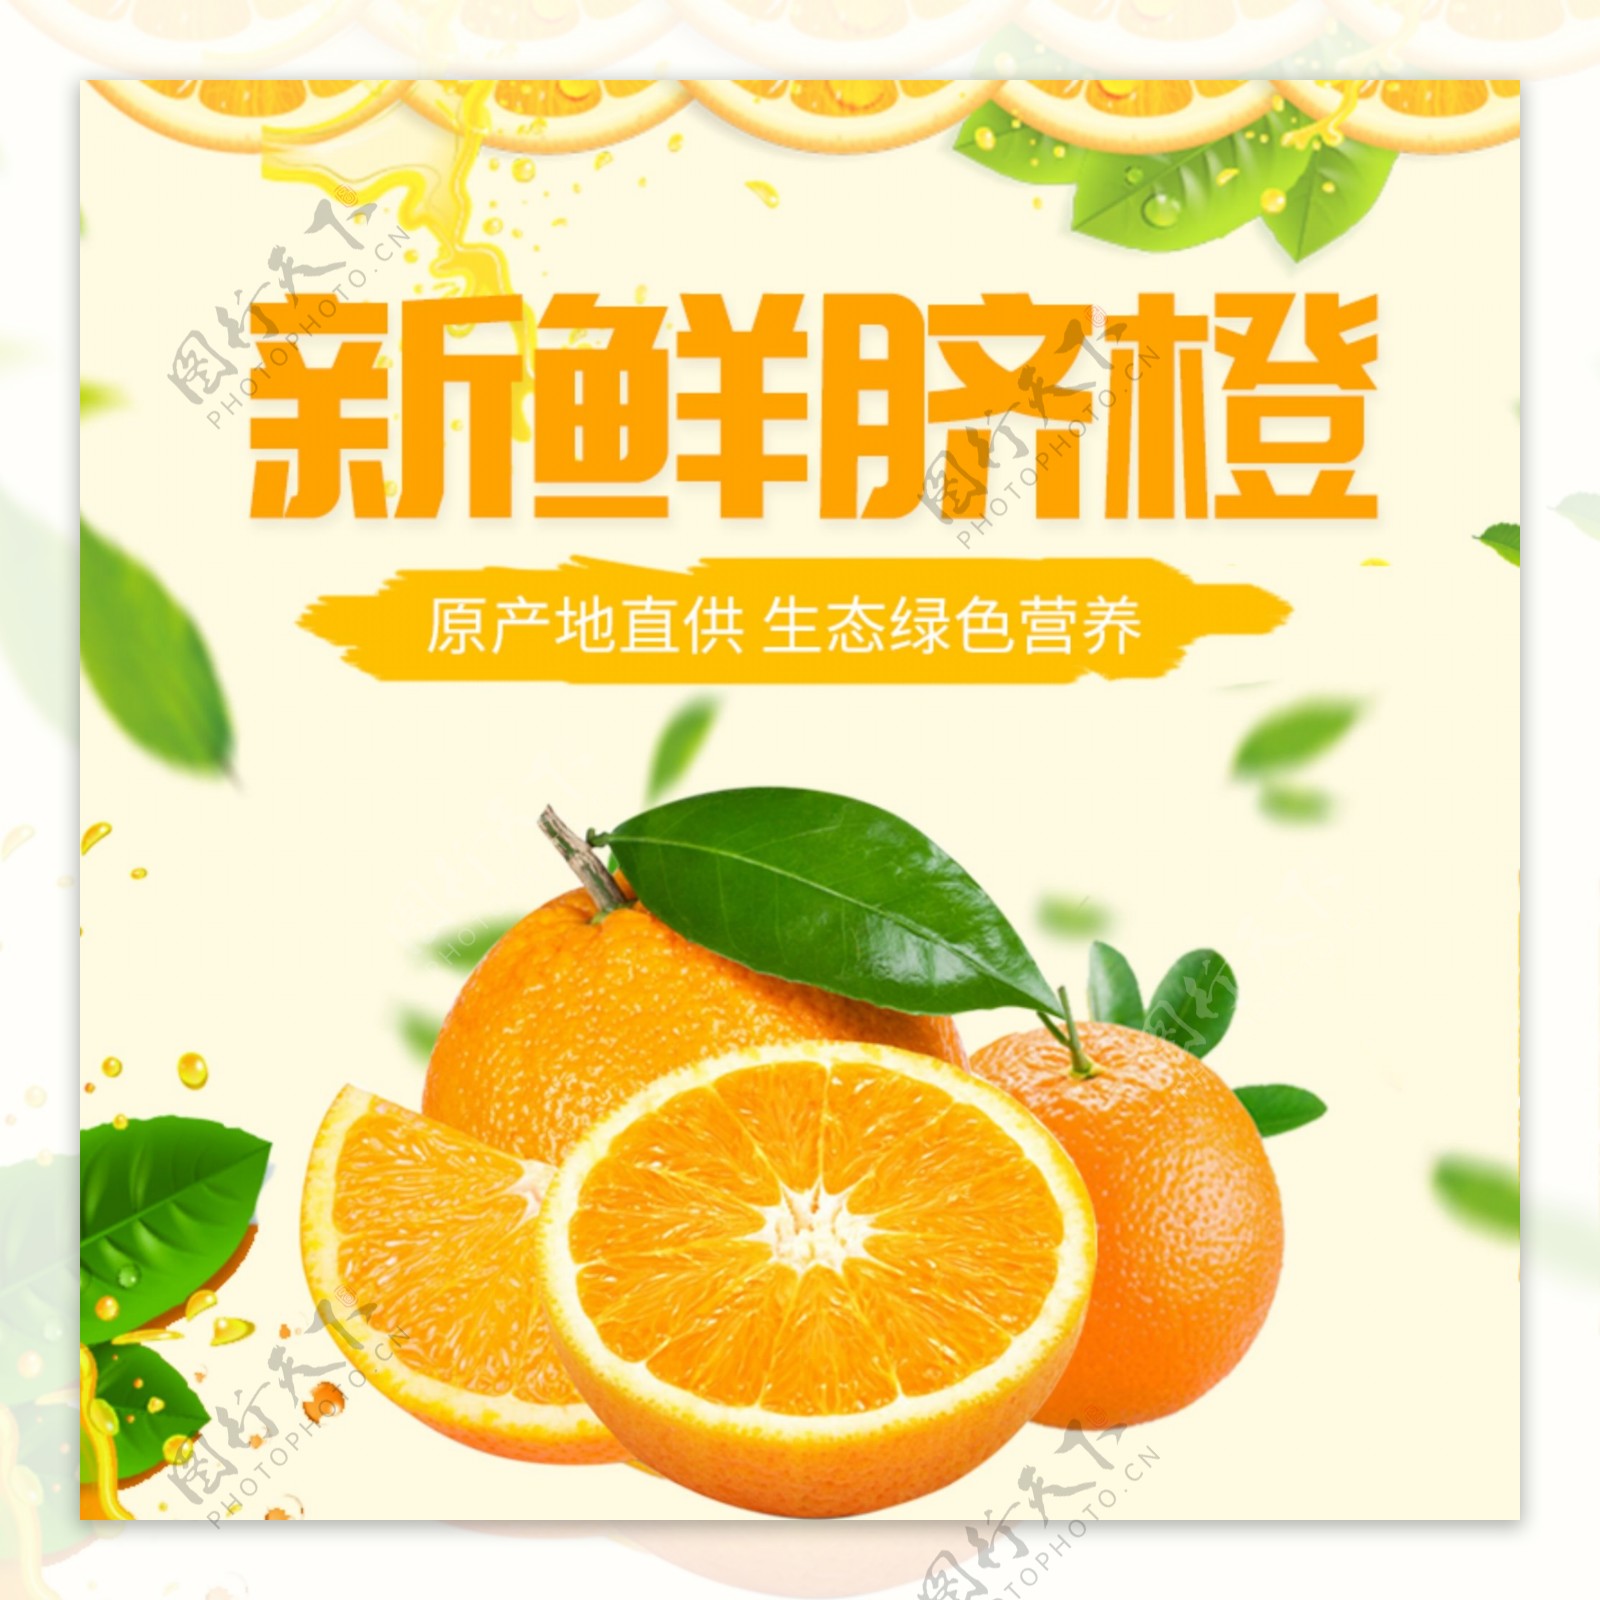 新鲜脐橙水果促销淘宝主图